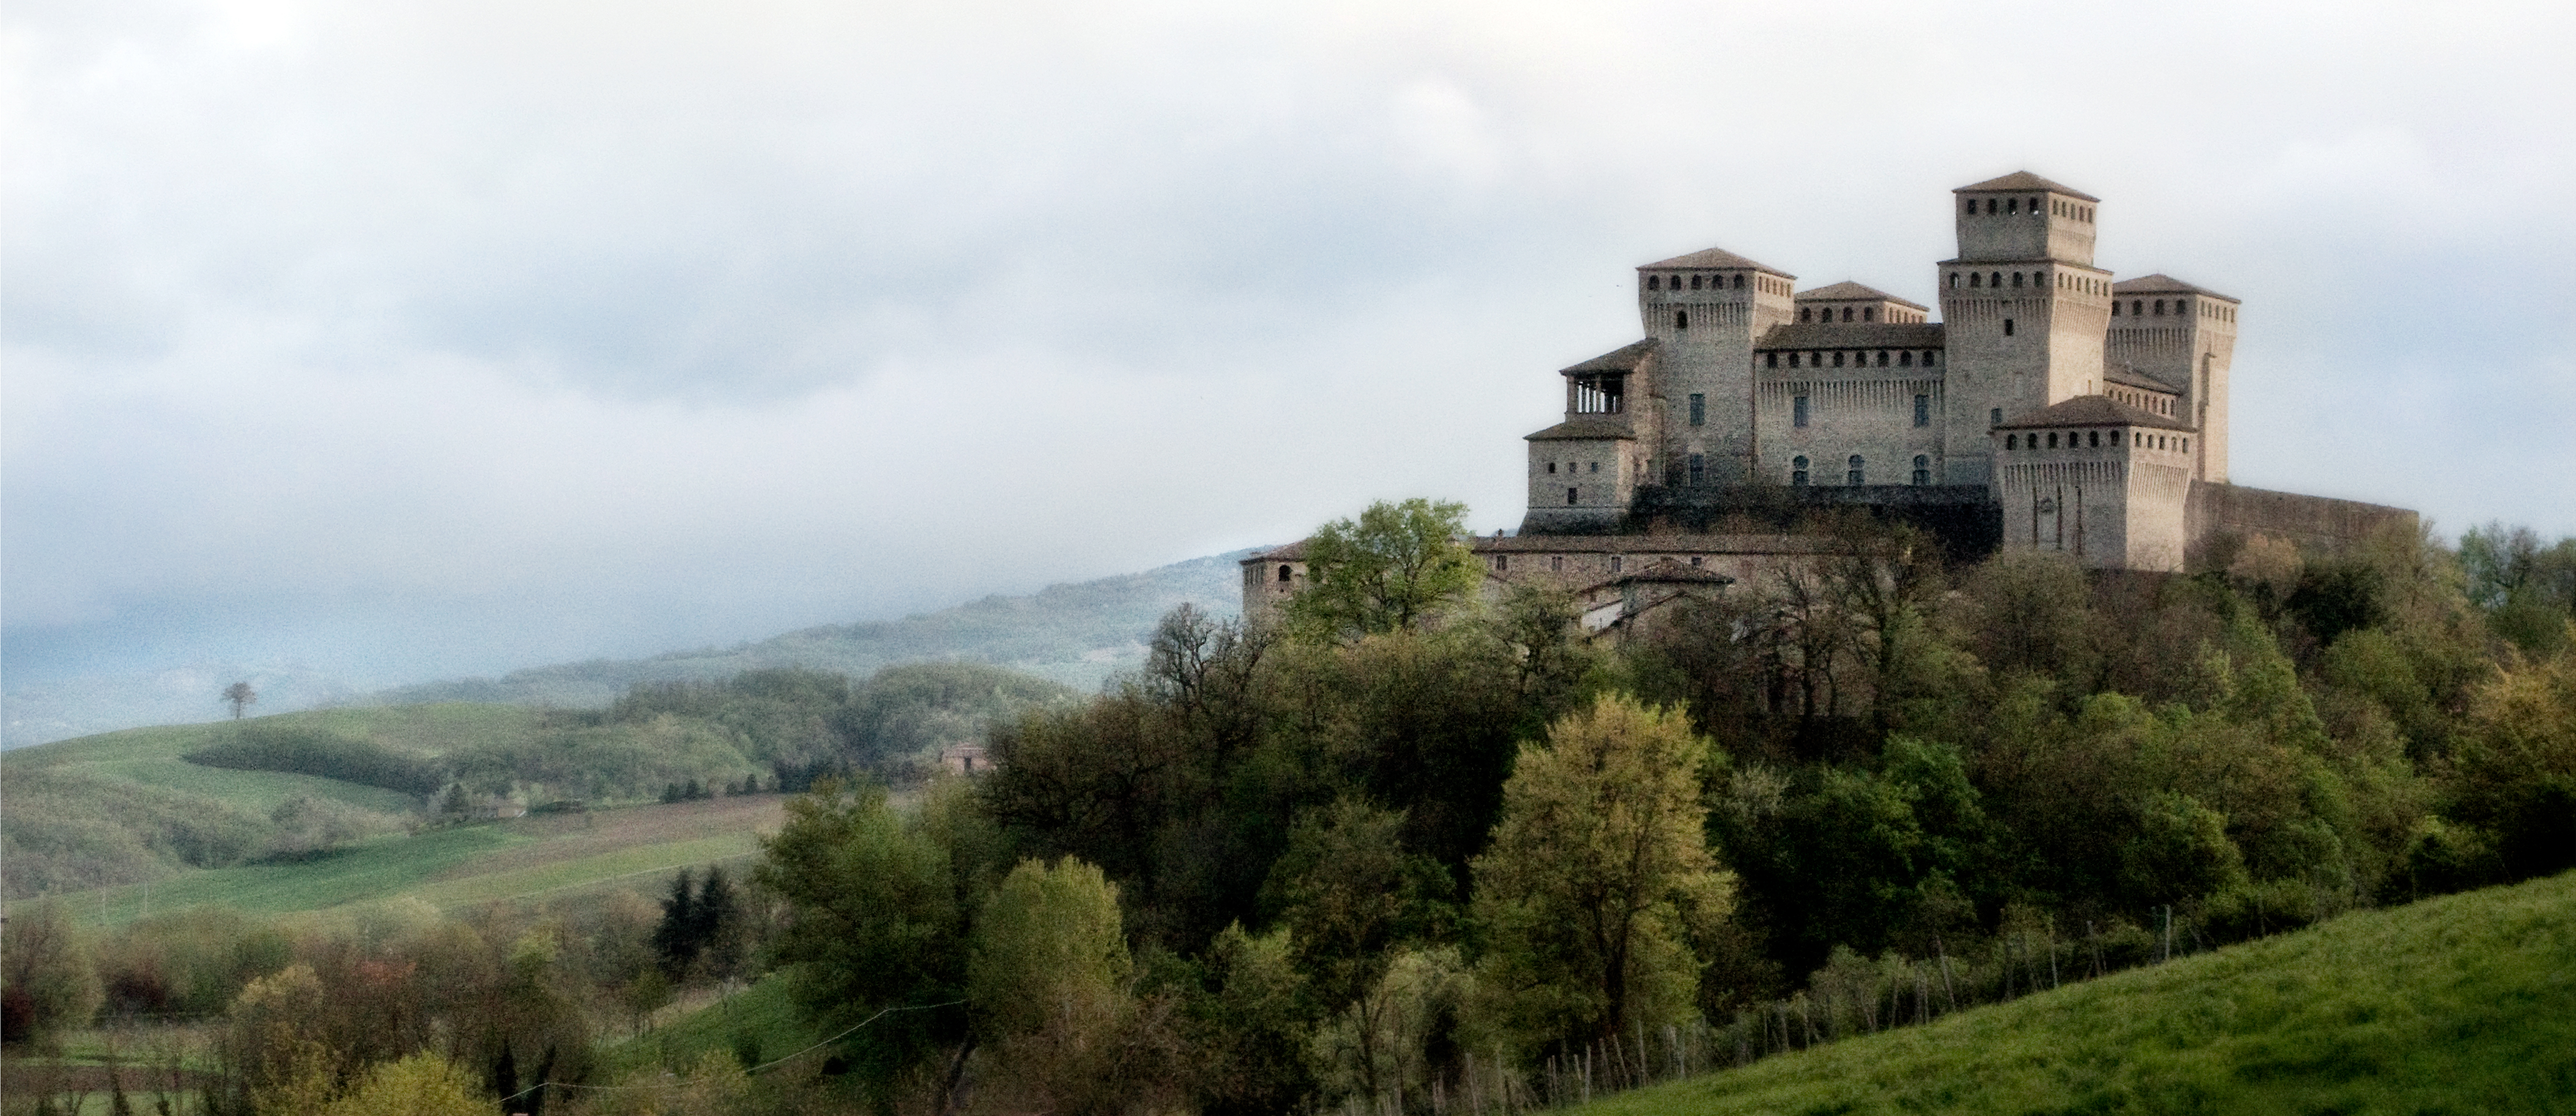 photo: https://upload.wikimedia.org/wikipedia/commons/e/e5/Castello_di_Torrechiara_%28Provincia_di_Parma%29.jpg